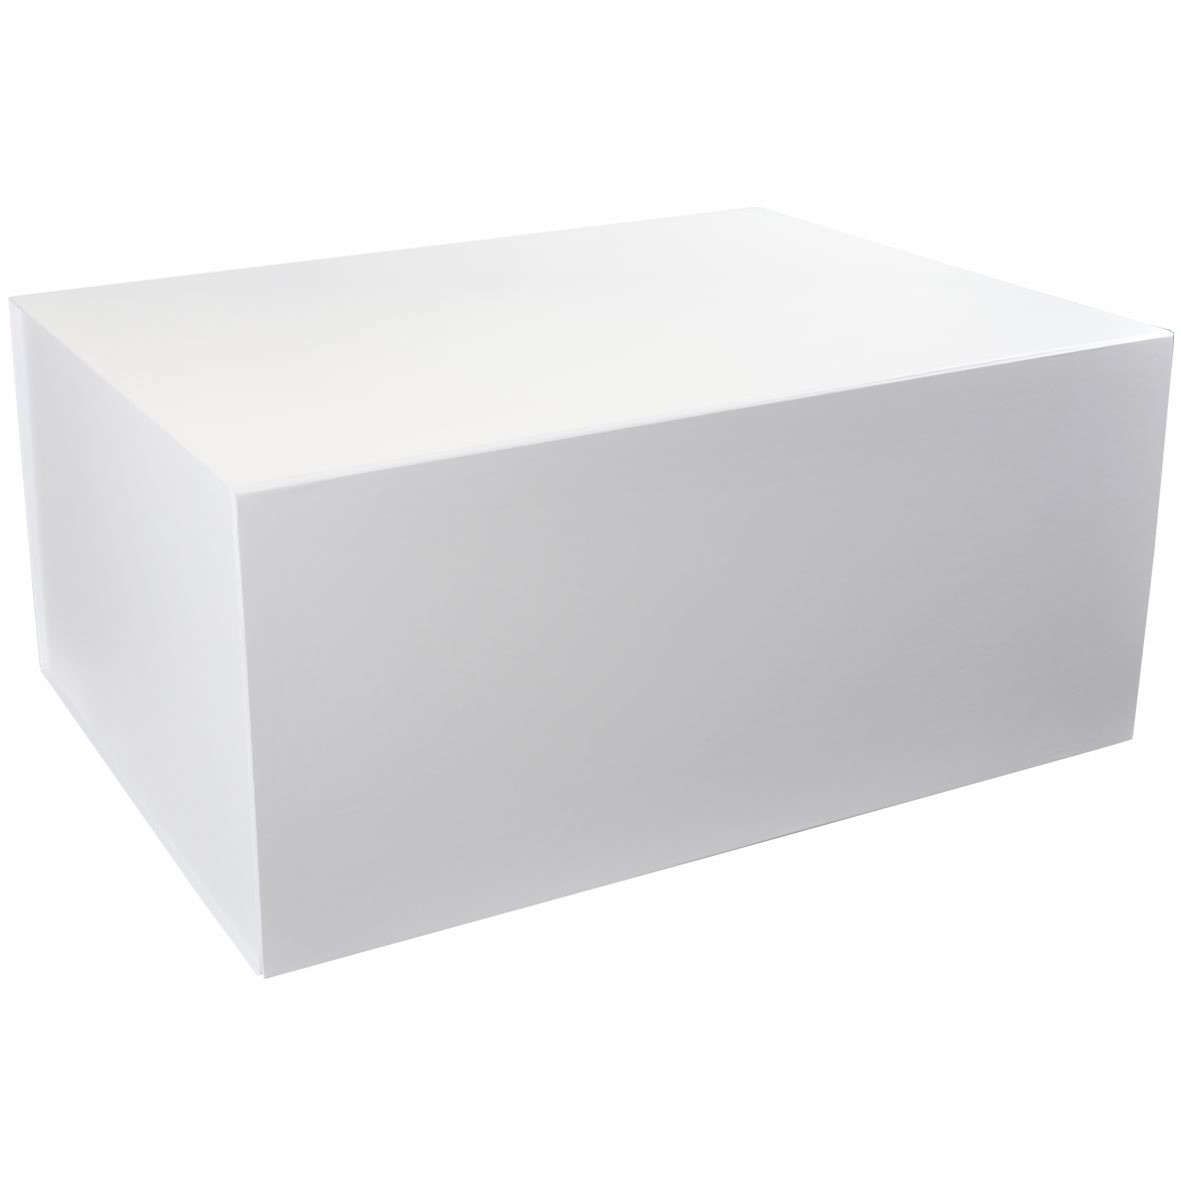 Carton cartonné, blanc, 60 x 80 cm